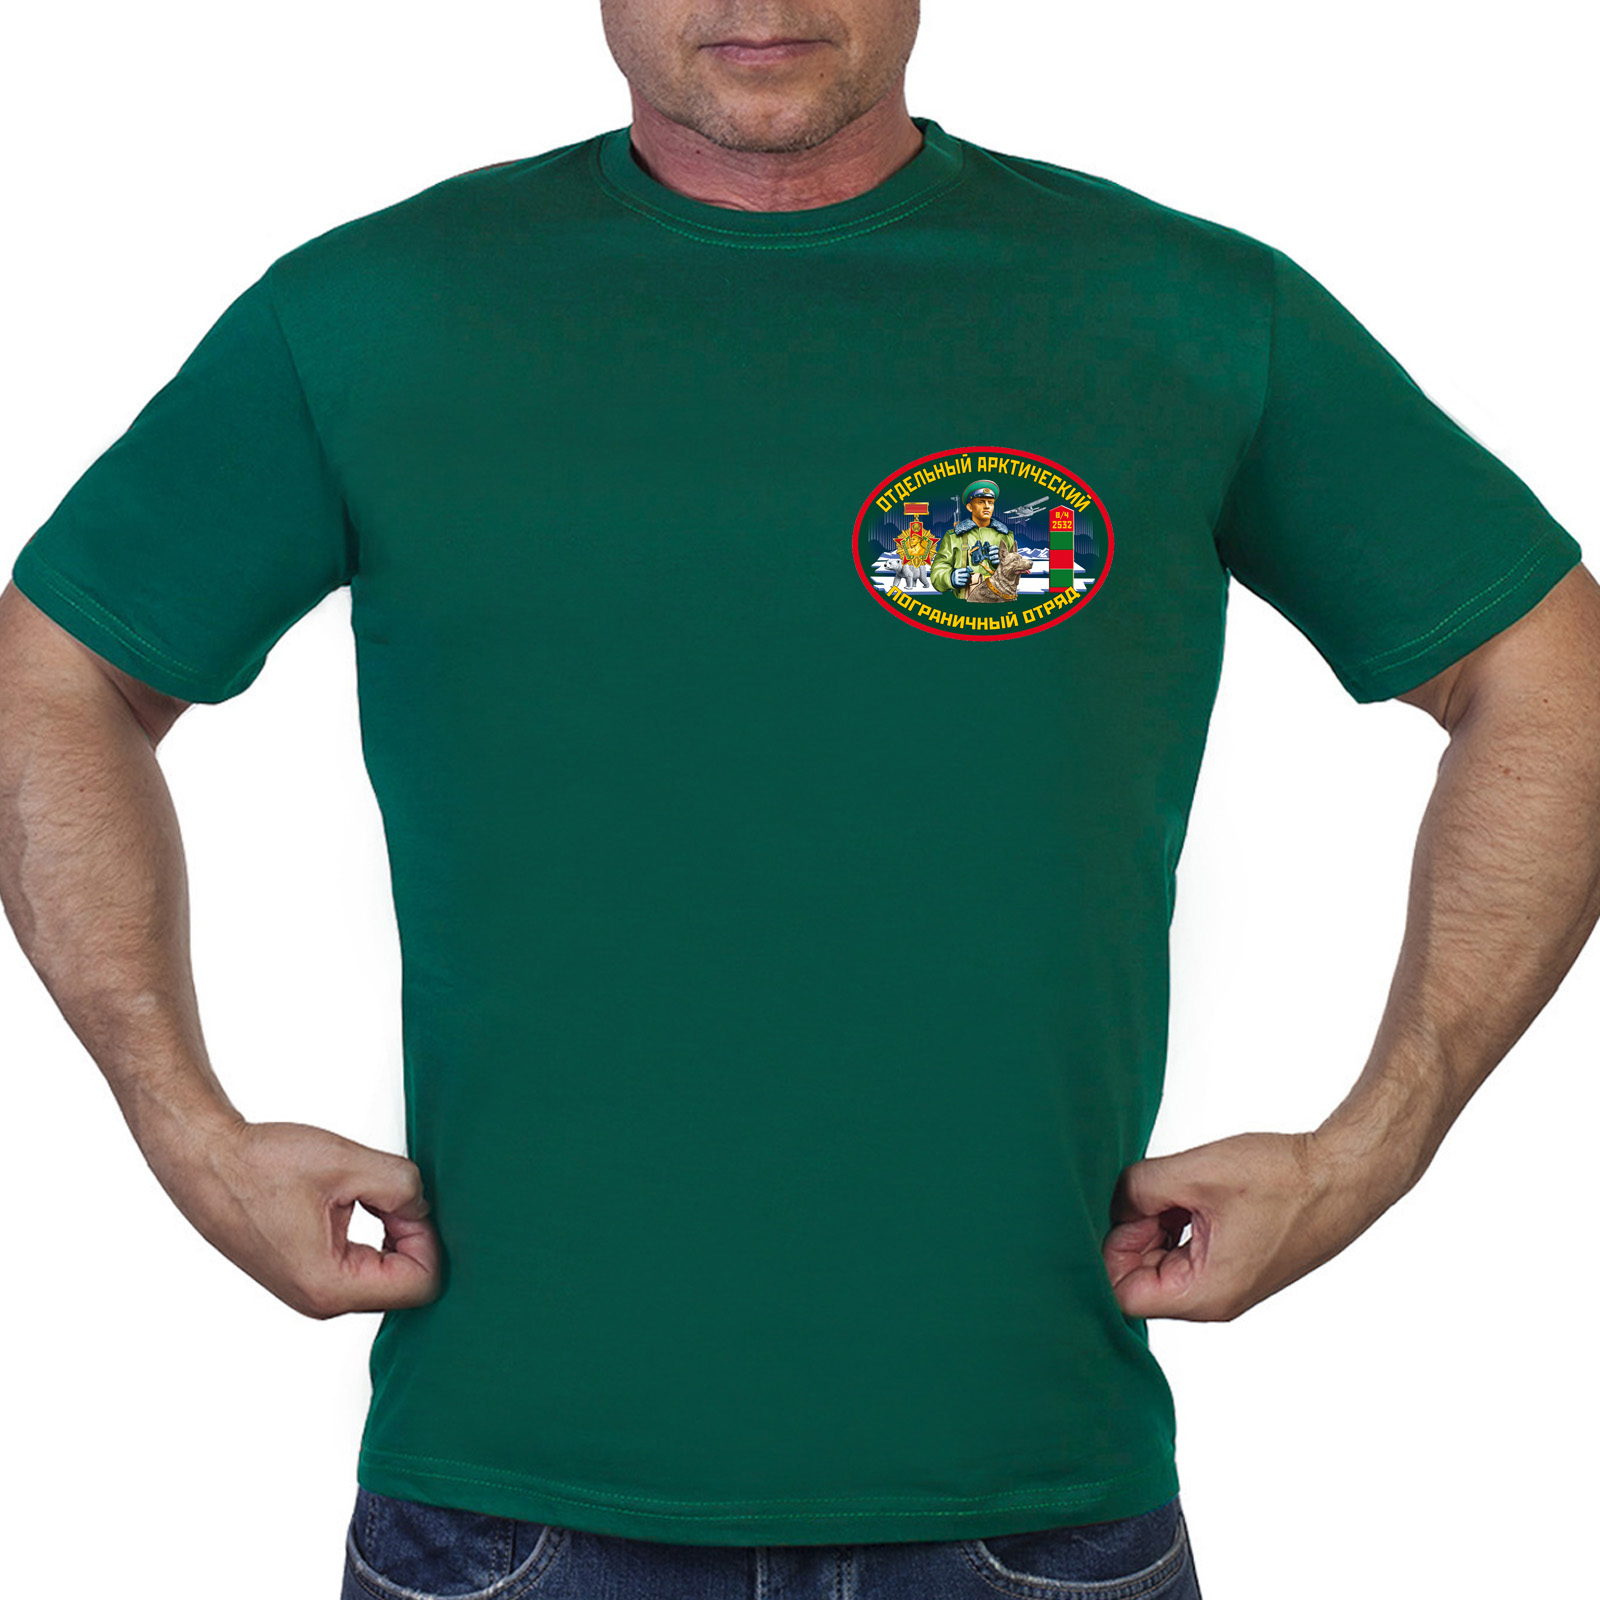 Зелёная футболка "Отдельный Арктический пограничный отряд"